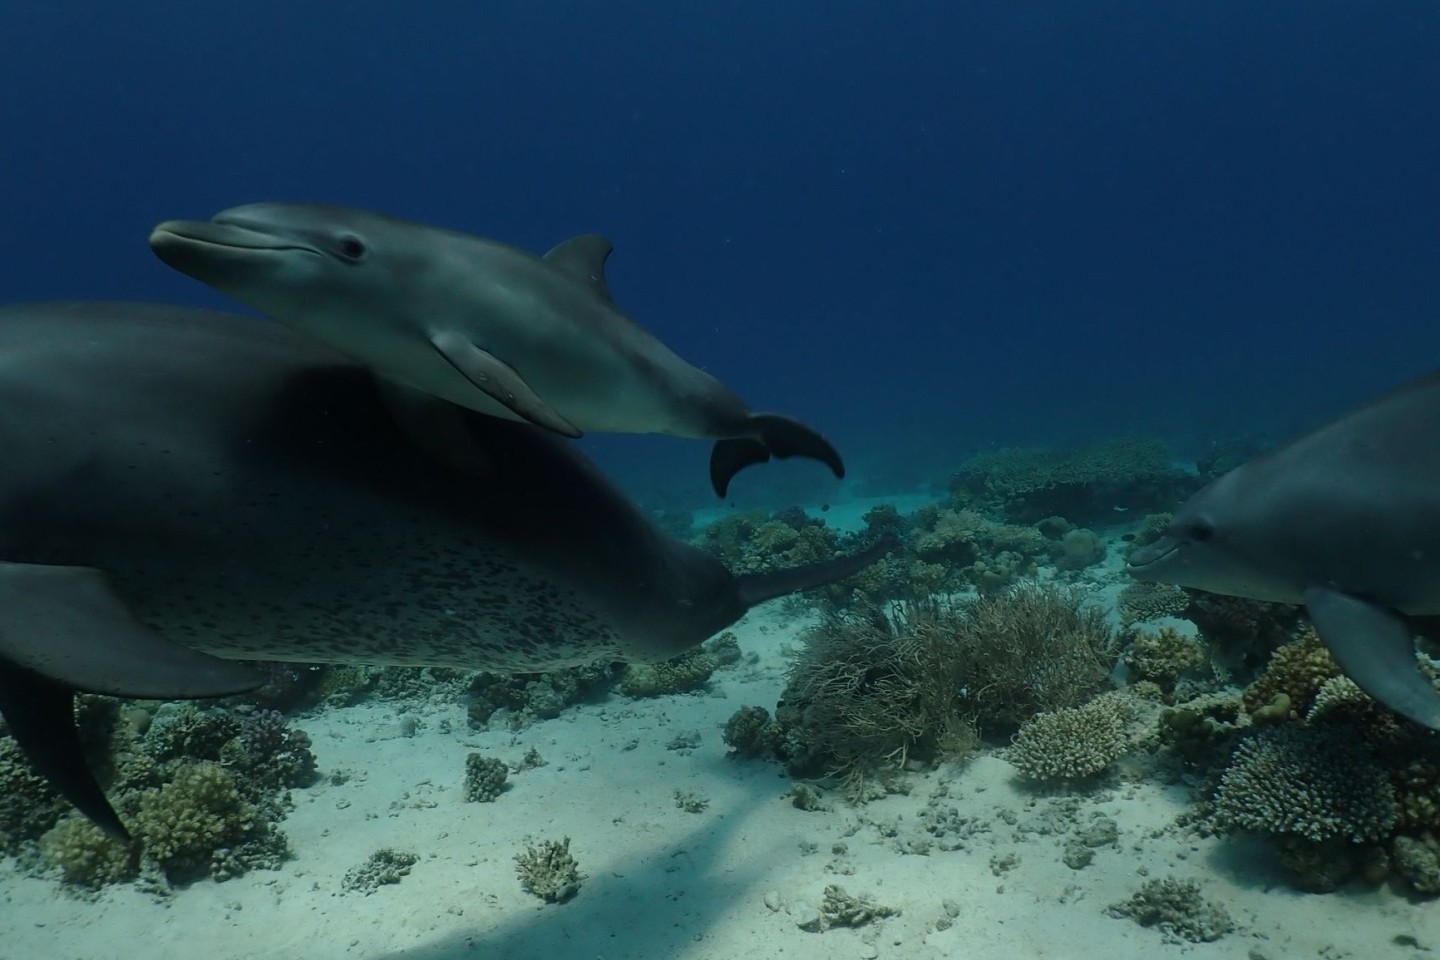 Forscher beobachteten Delfine im Roten Meer vor Ägypten dabei, wie sie sich an ausgewählten Korallen und Schwämmen rieben und dafür auch in einer Reihe anstellten.